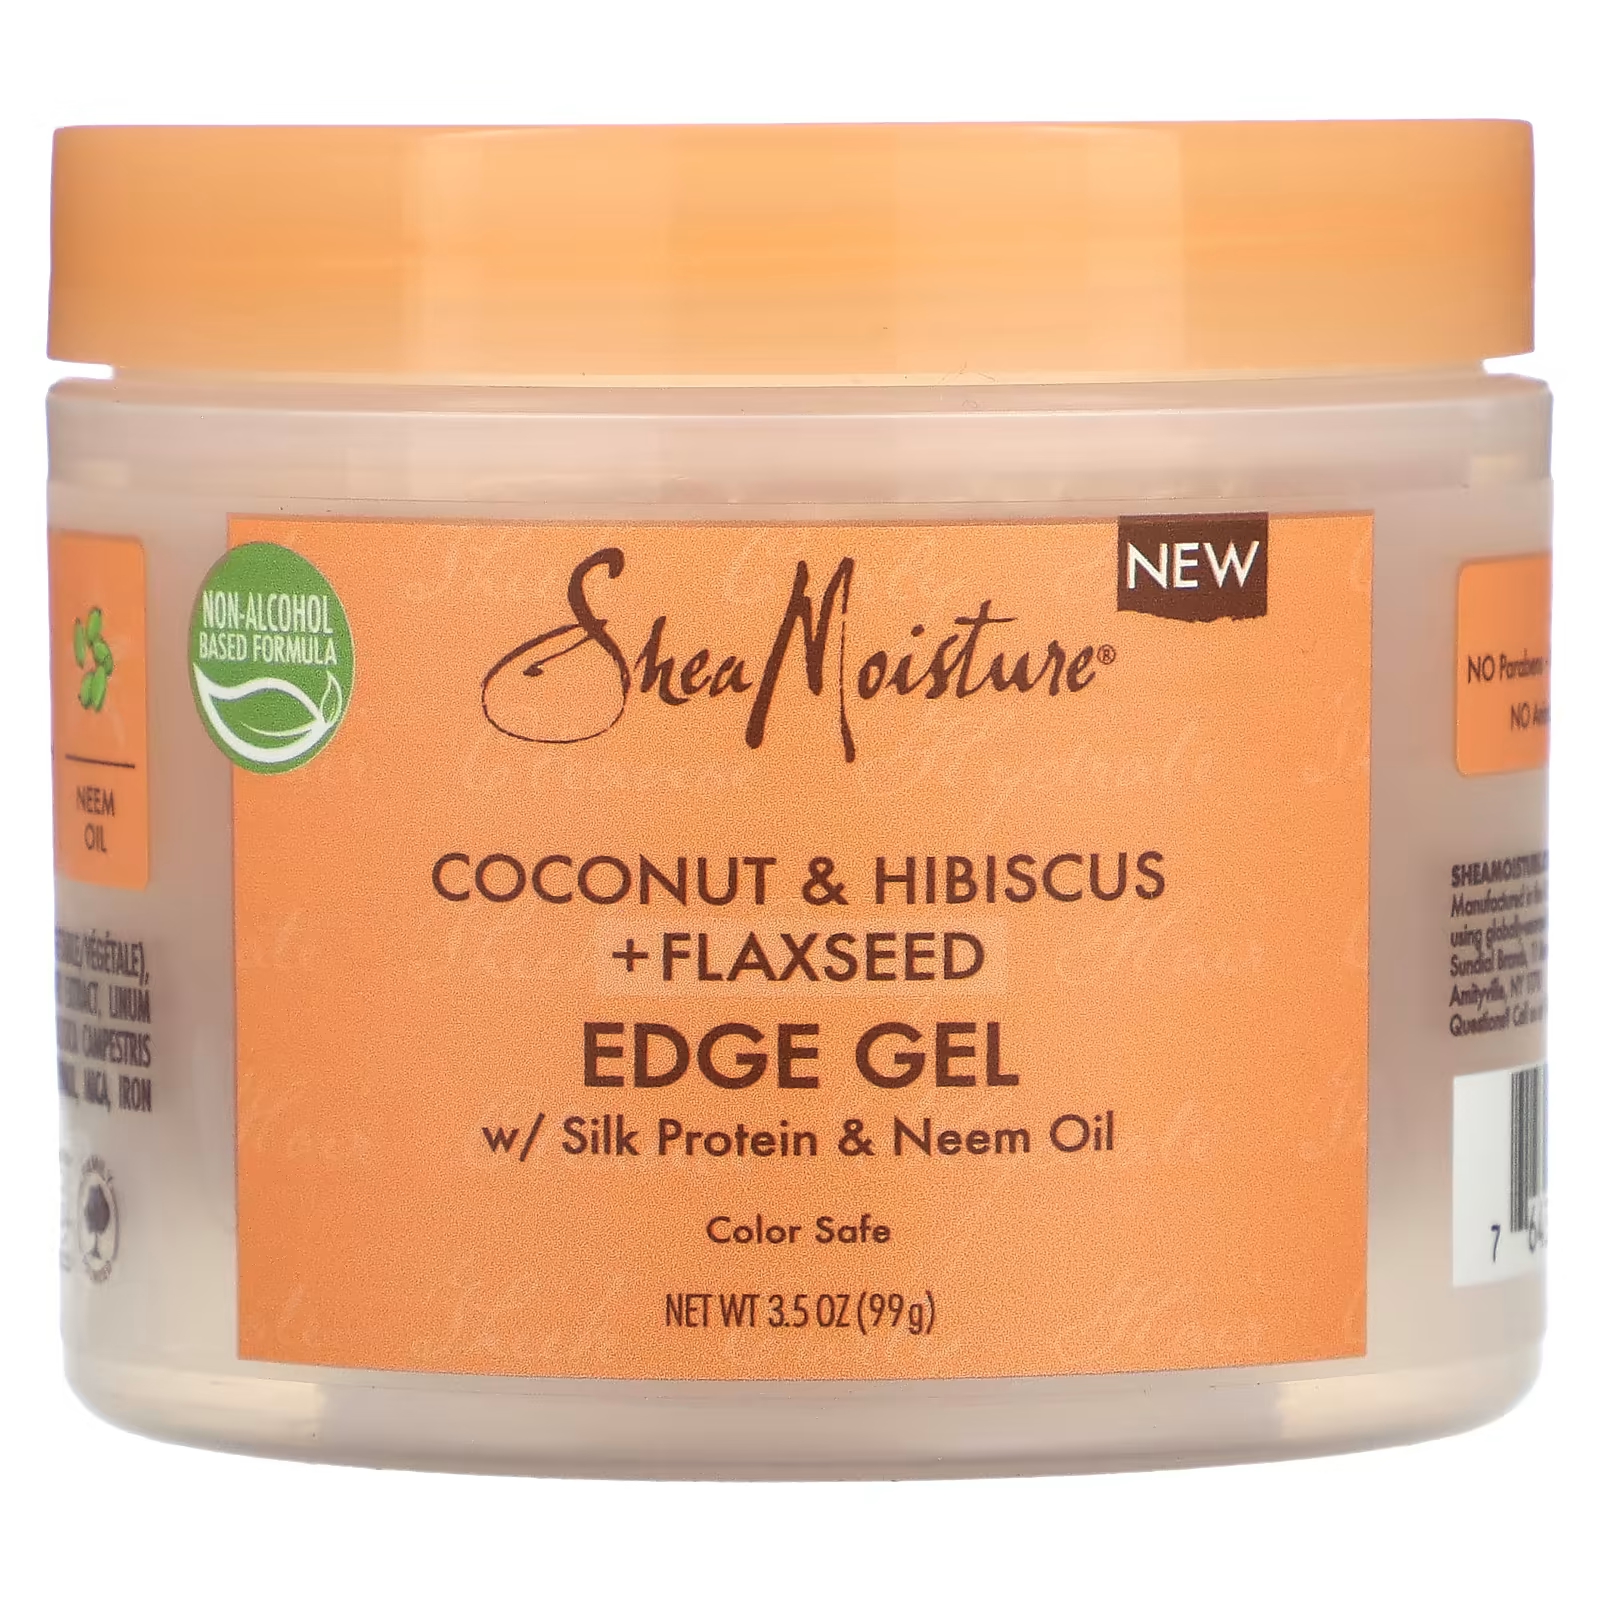 Гель для волос SheaMoisture Edge Gel кокос гибискус и льняное семя, 99г очищающий гель sheamoisture для укладки кокос гибискус льняное семя